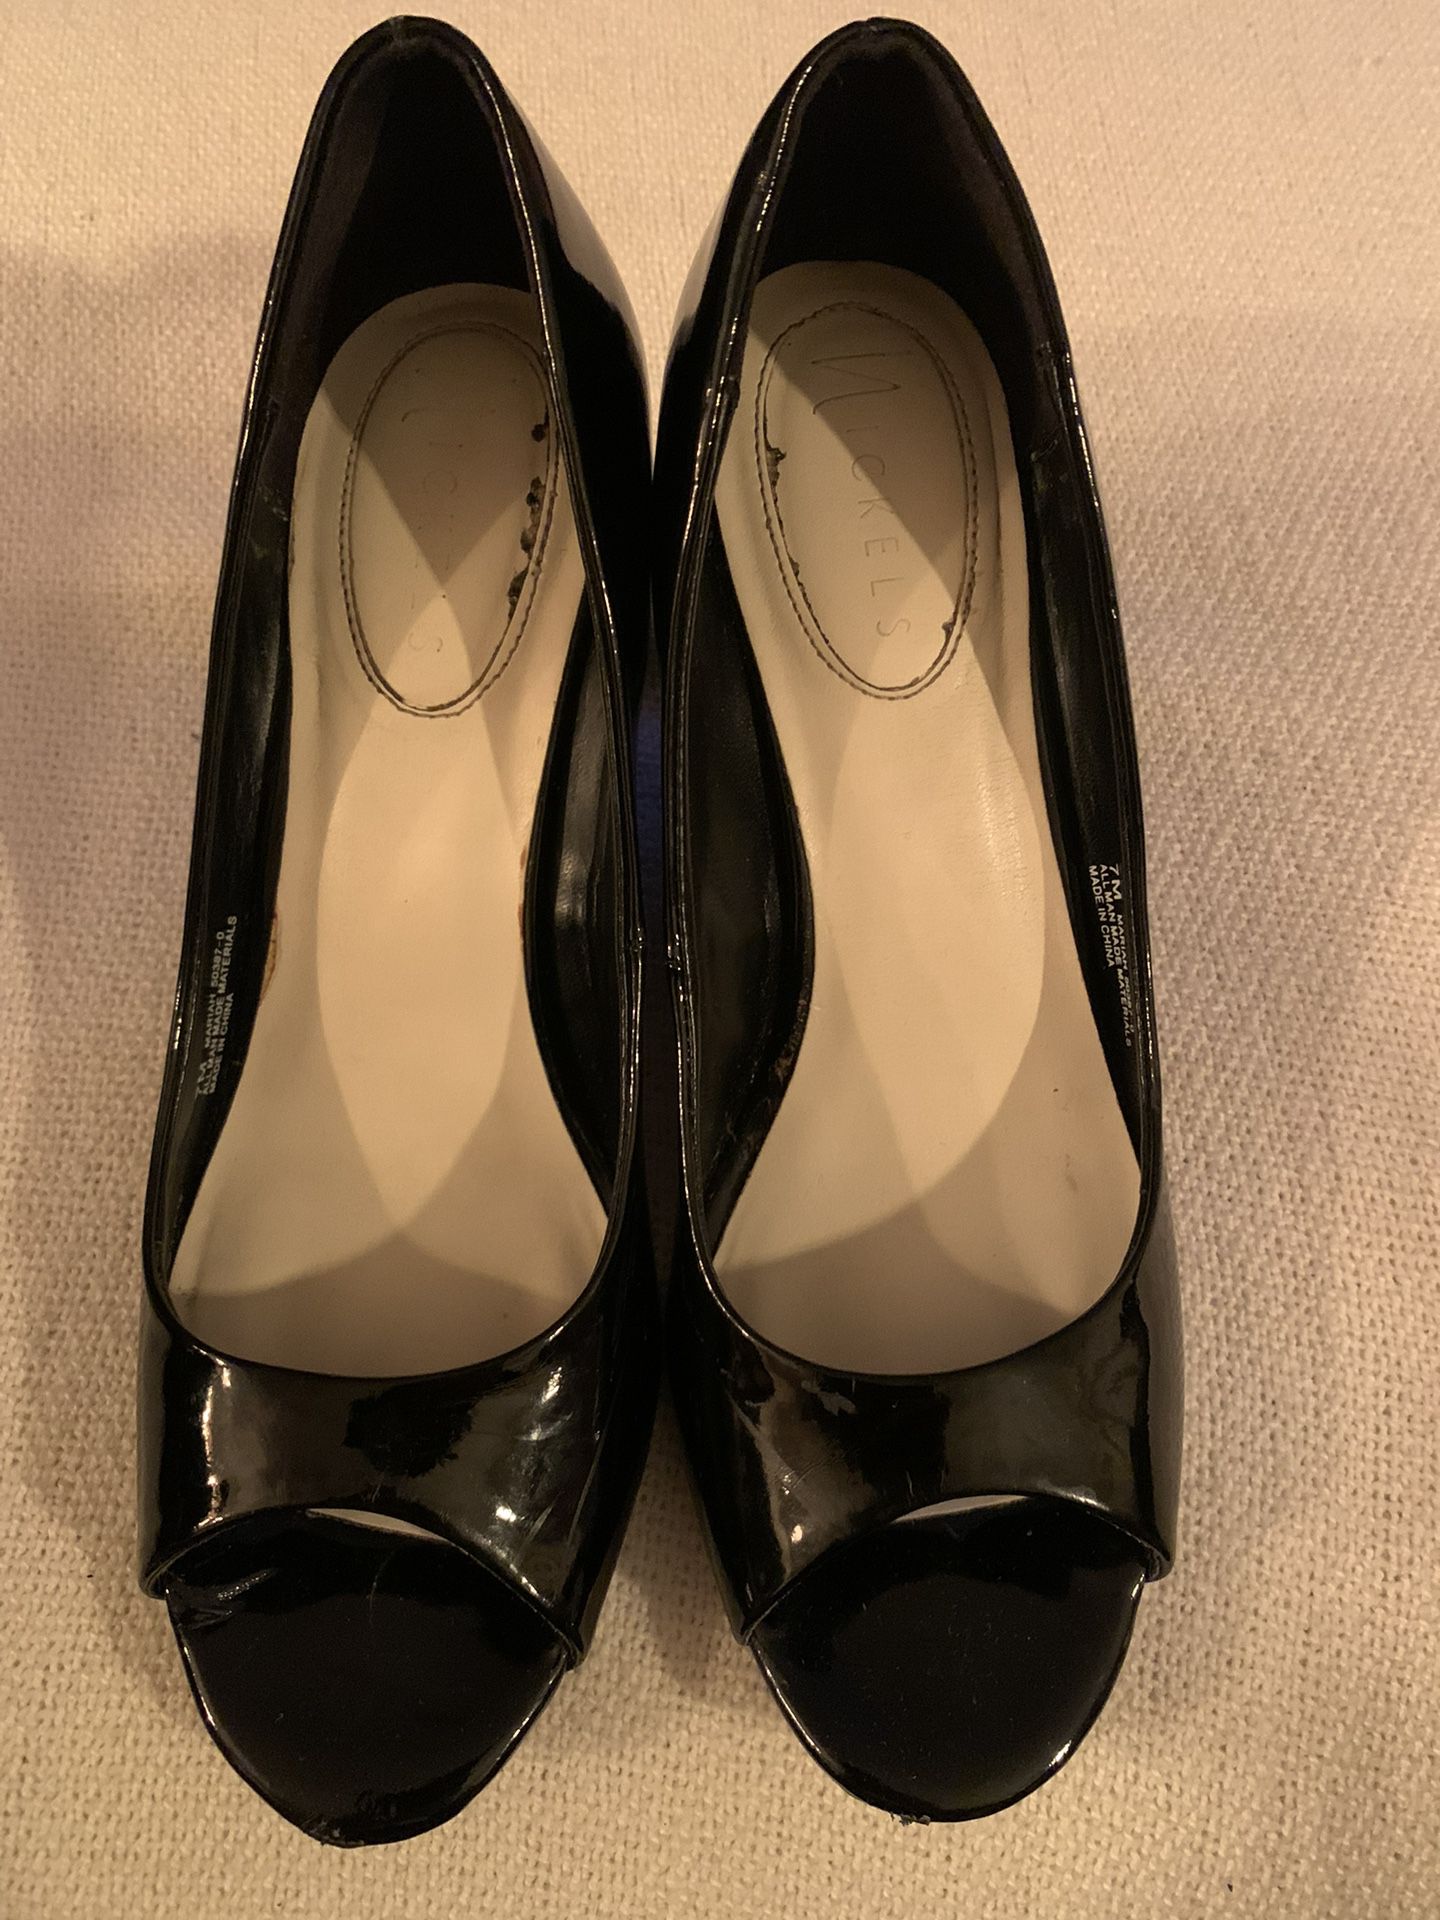 Black heels size 7 wedges by Nickels